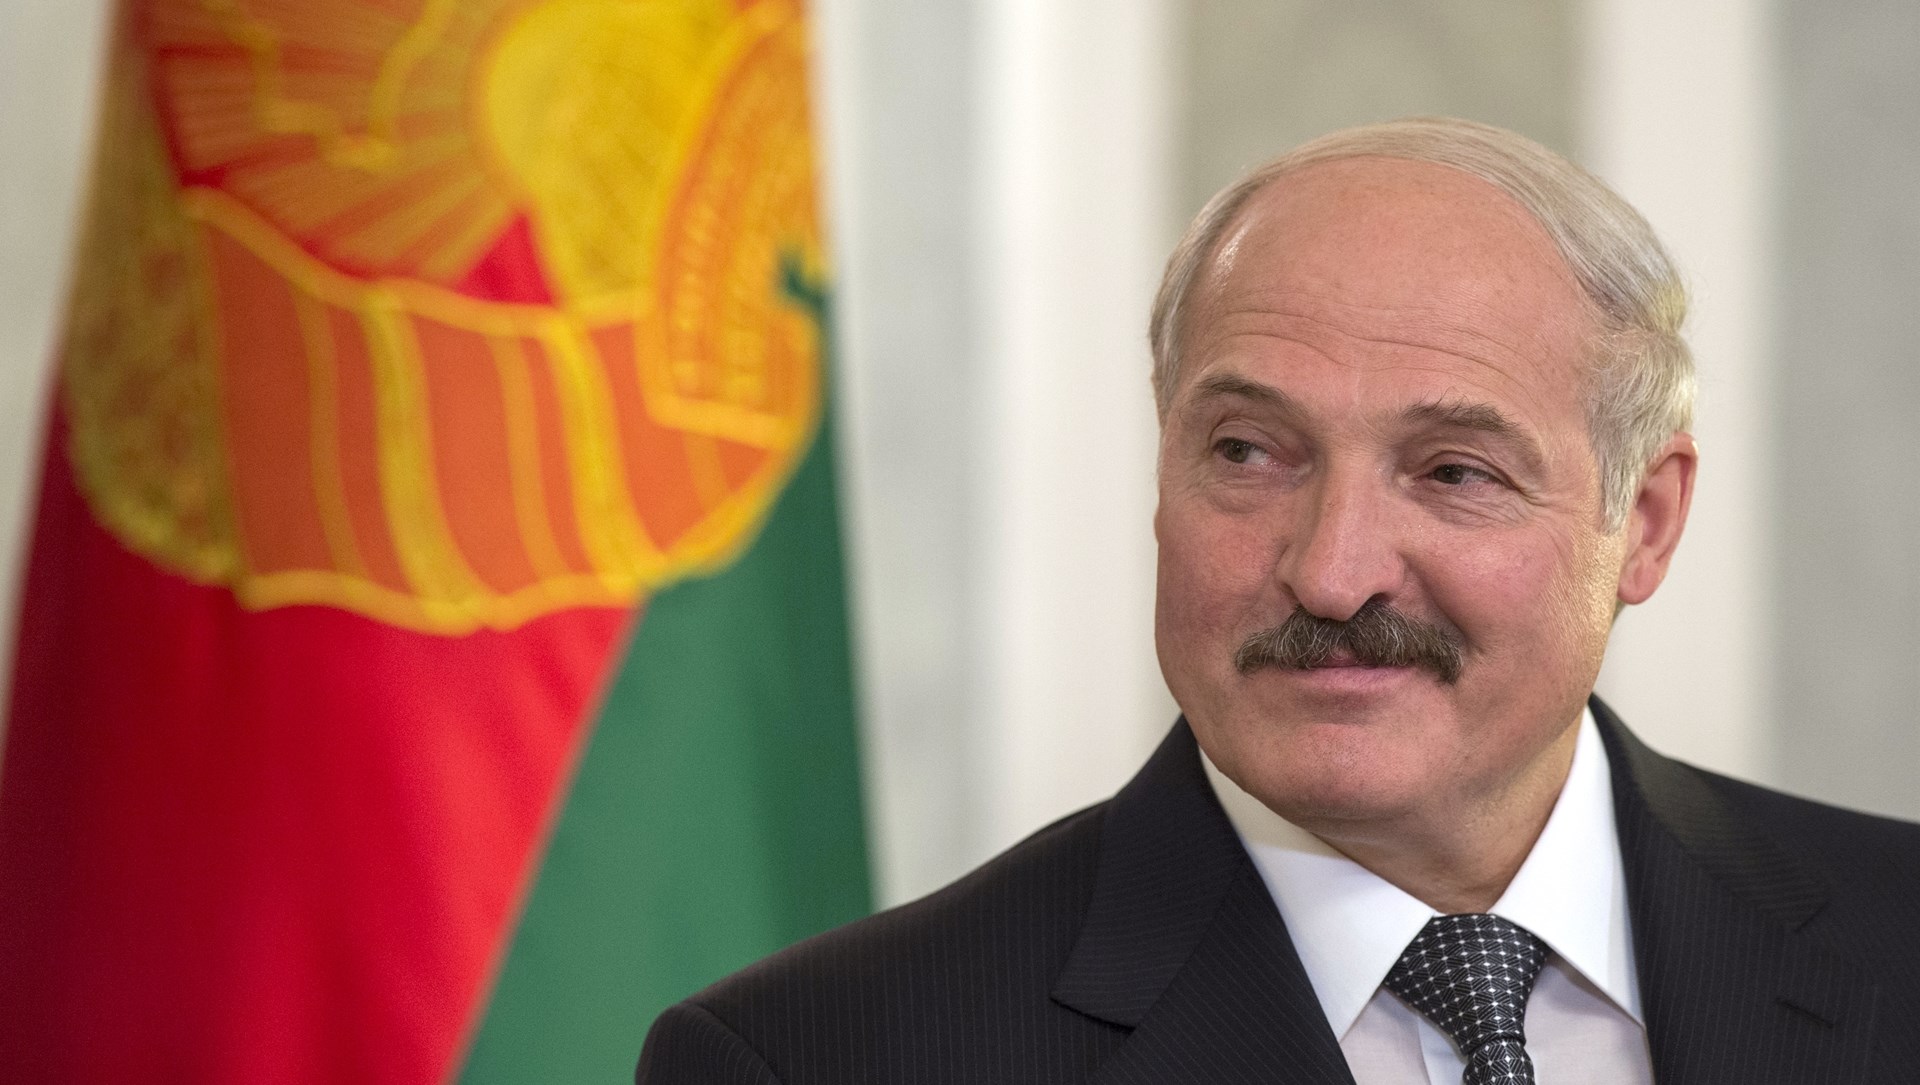 Усик: Лукашенко – мужик с огроменными стальными яйцами